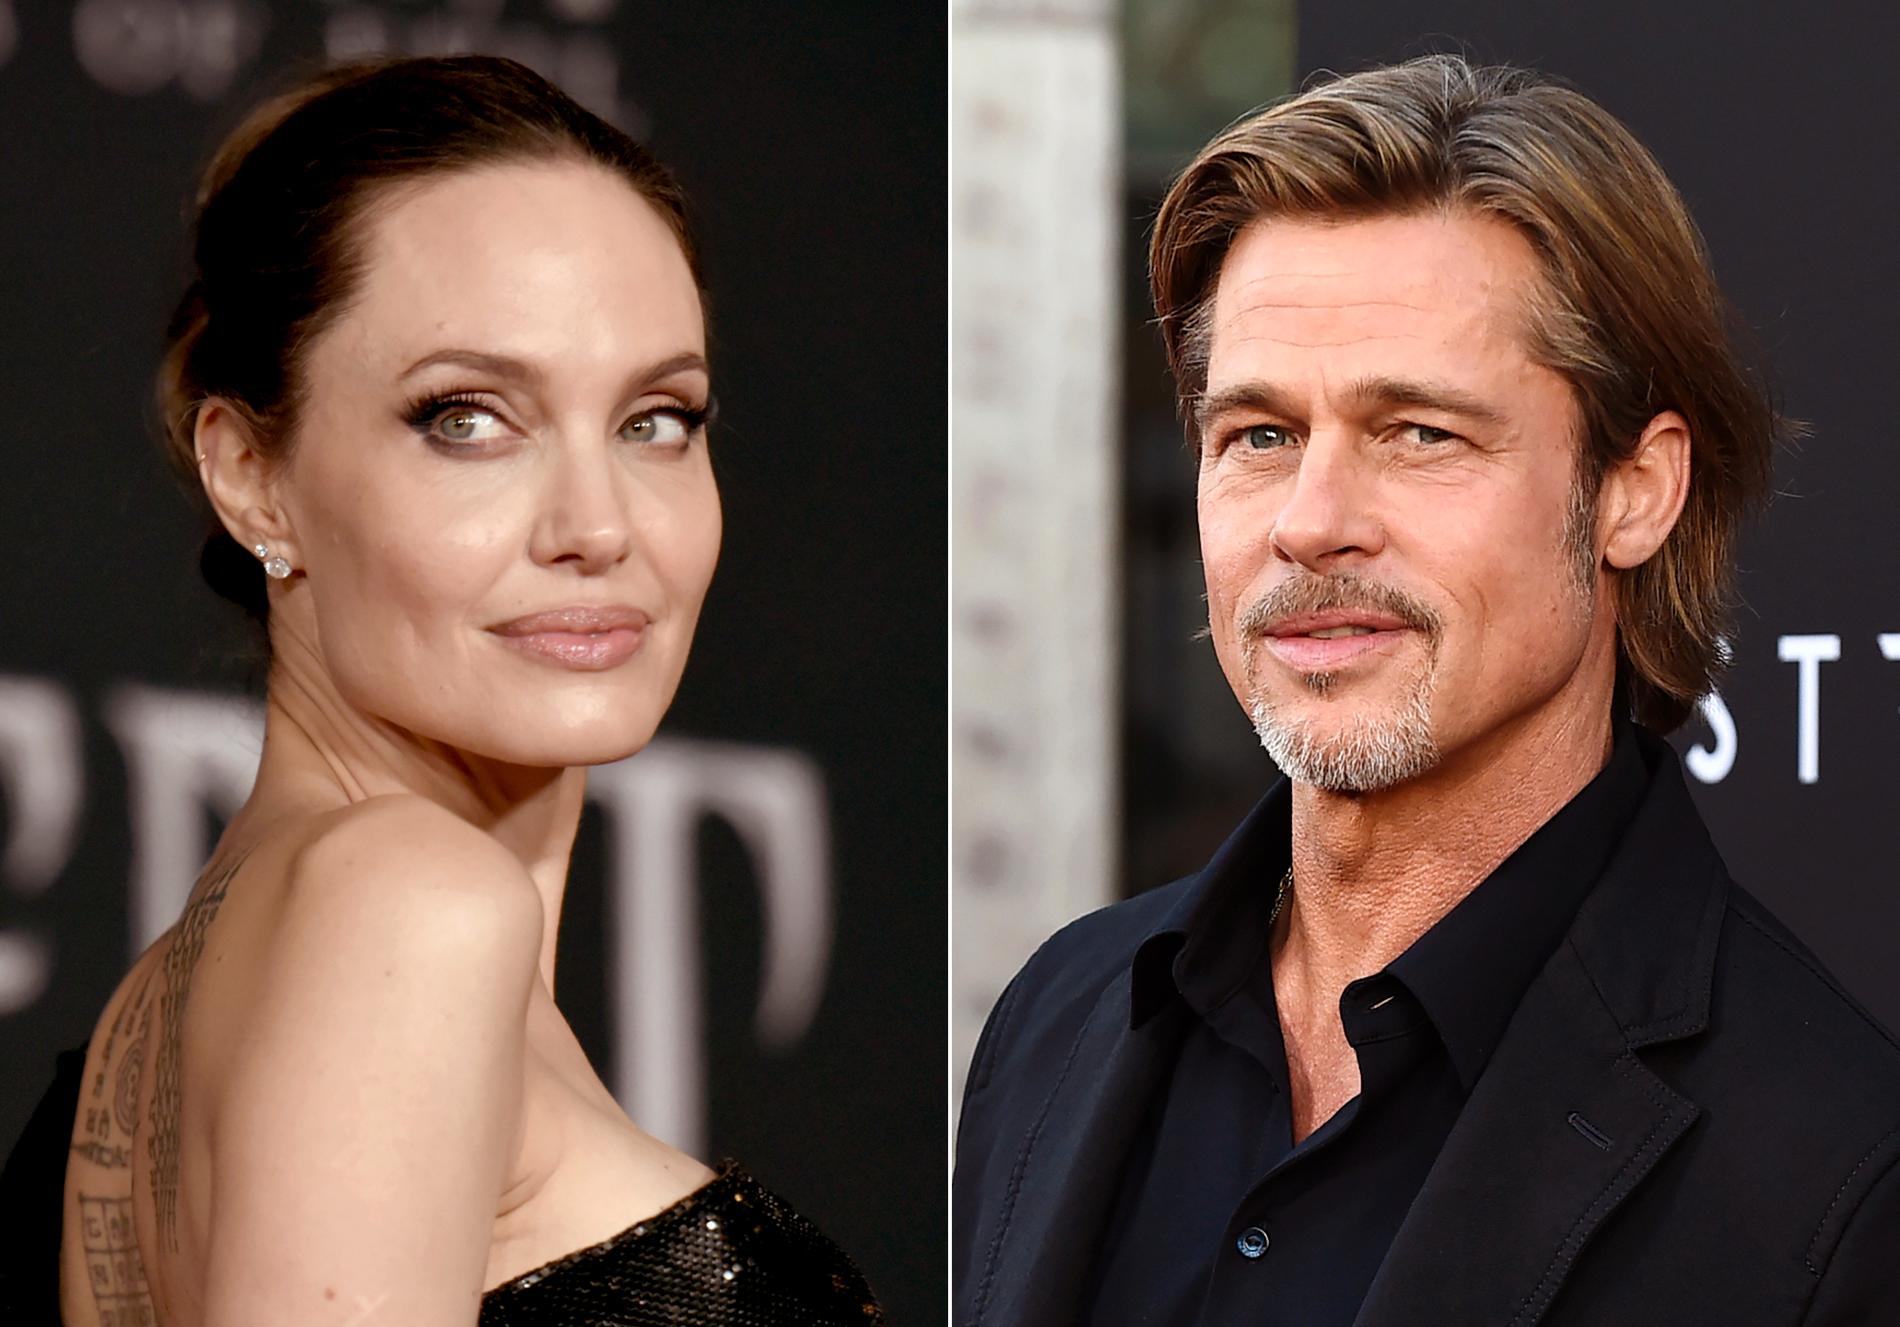 Angelina Jolie och Brad Pitt gick skilda vägar 2016. Arkivbild.